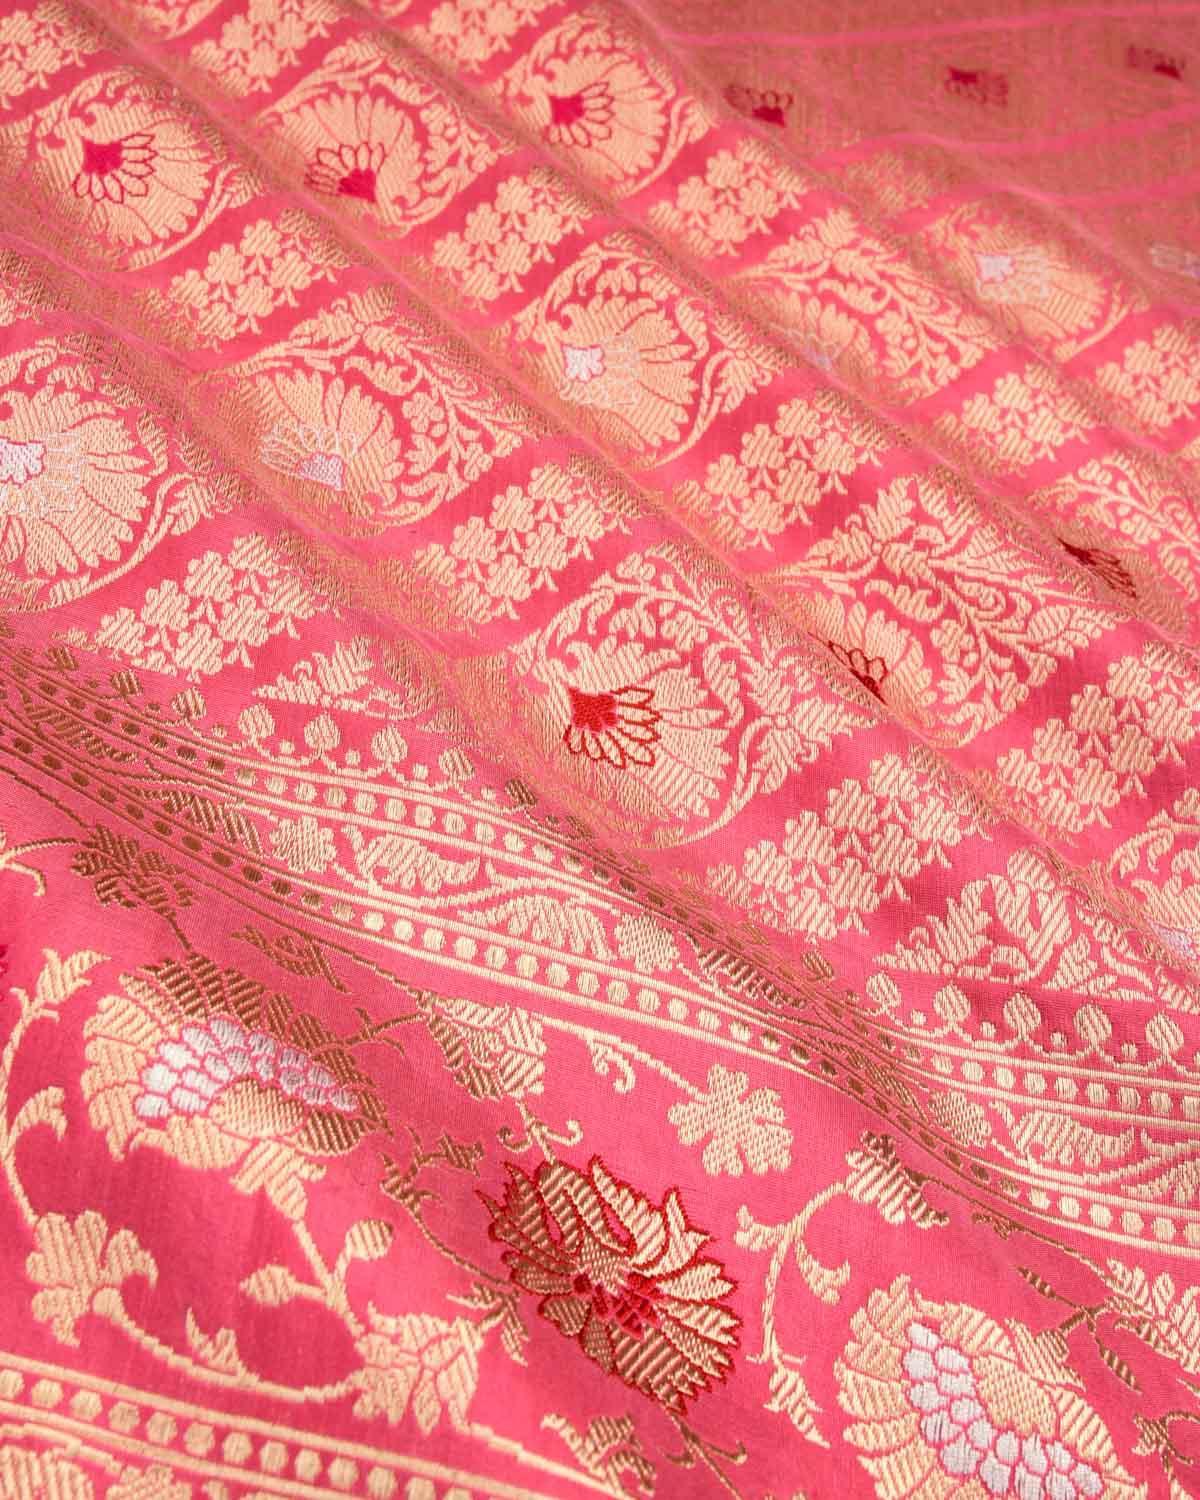 Pink Banarasi Diagonal Inlaid Stripes Kadhuan Brocade Handwoven Katan Silk Saree - By HolyWeaves, Benares